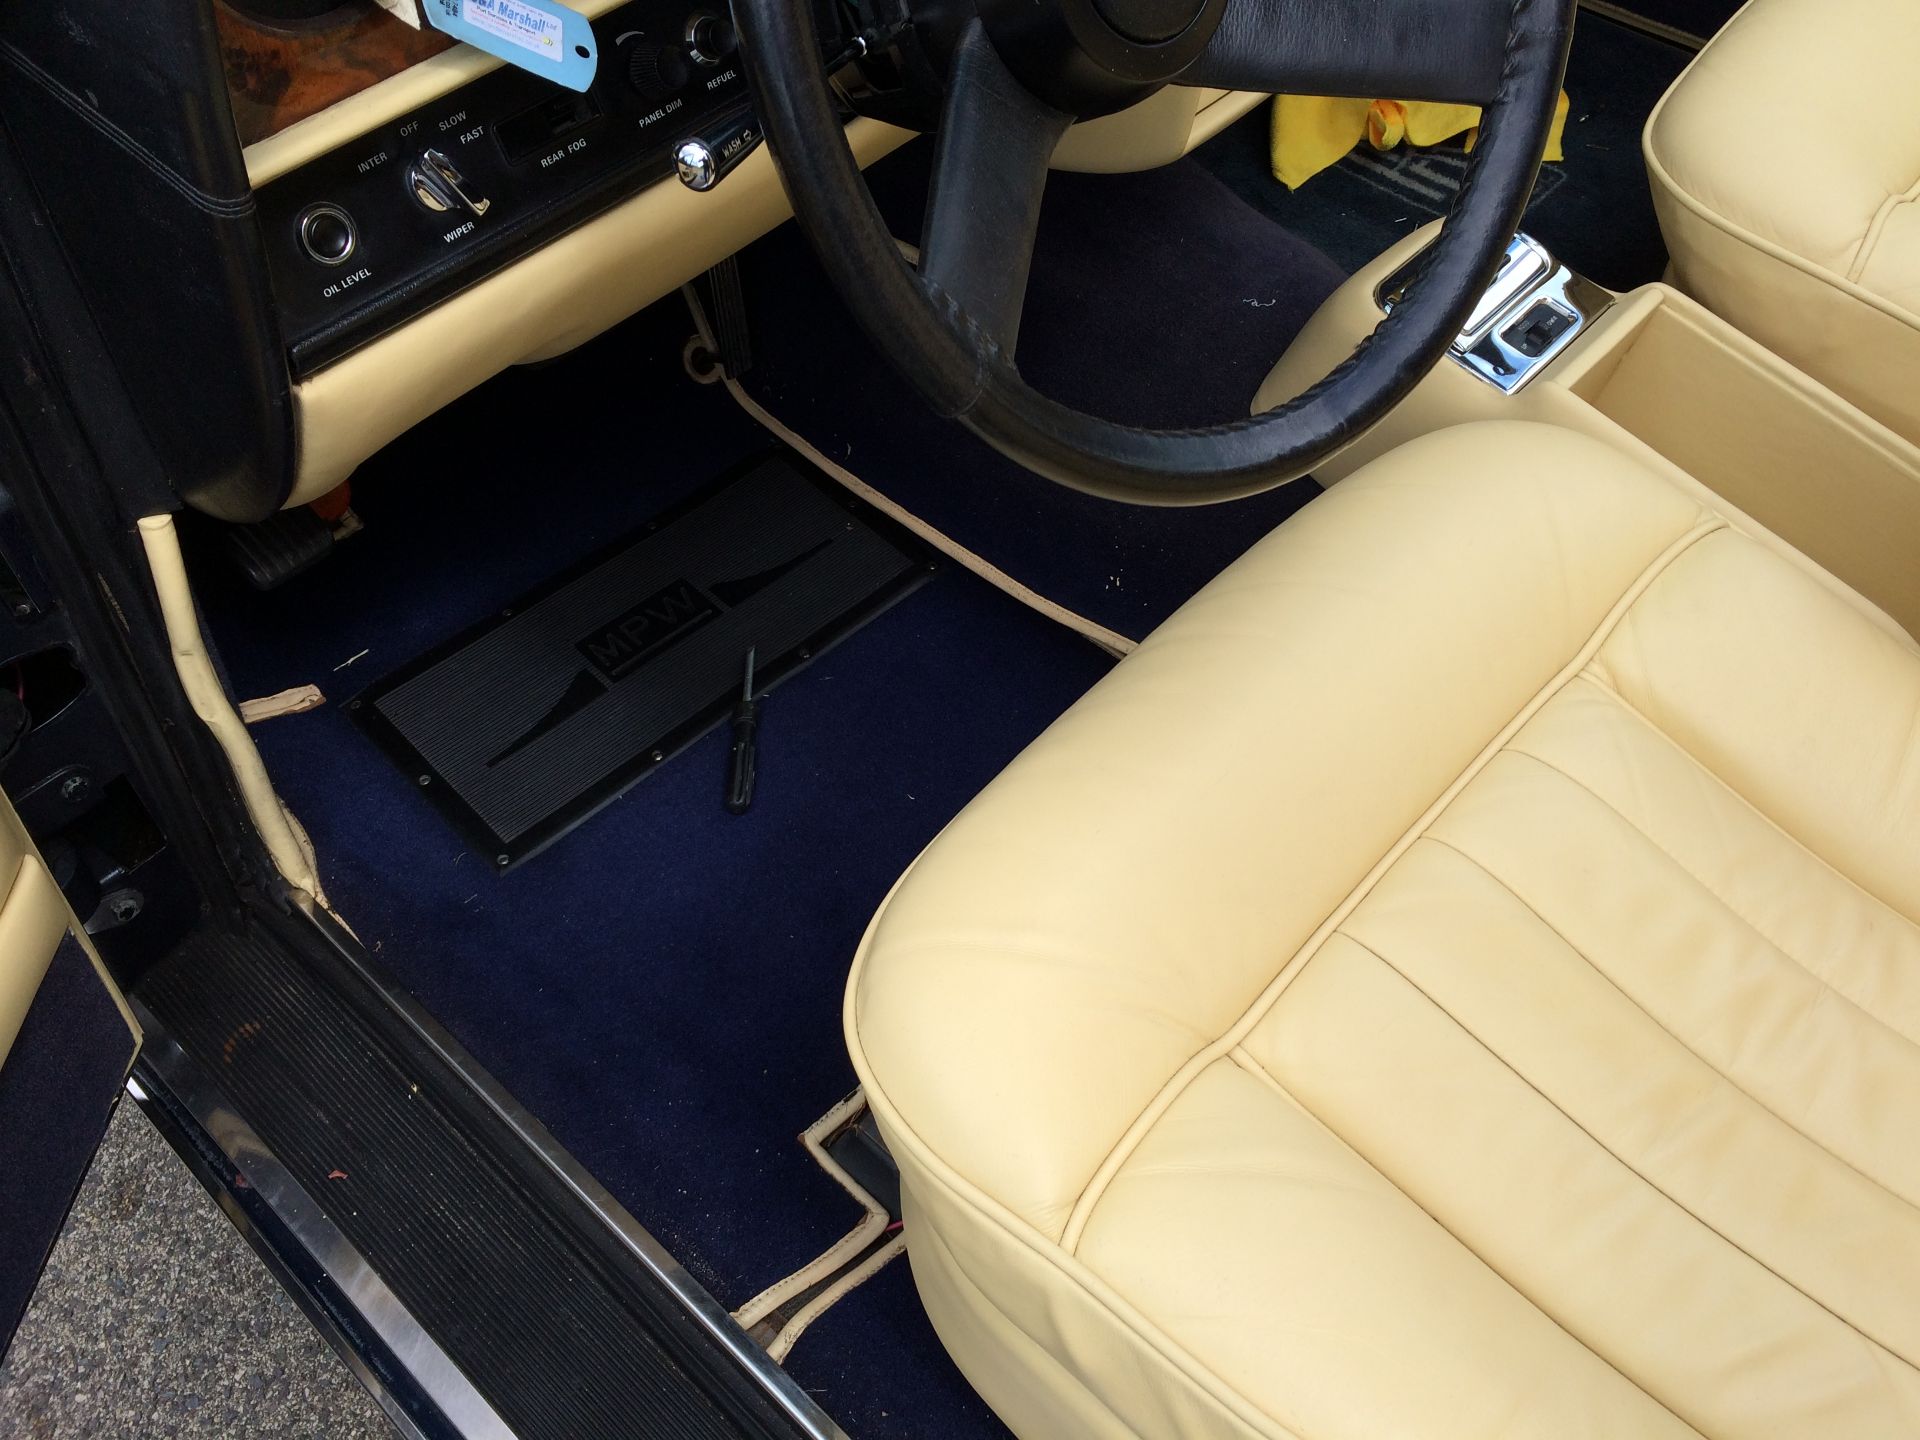 1977 Rolls Royce Corniche II - Image 4 of 7